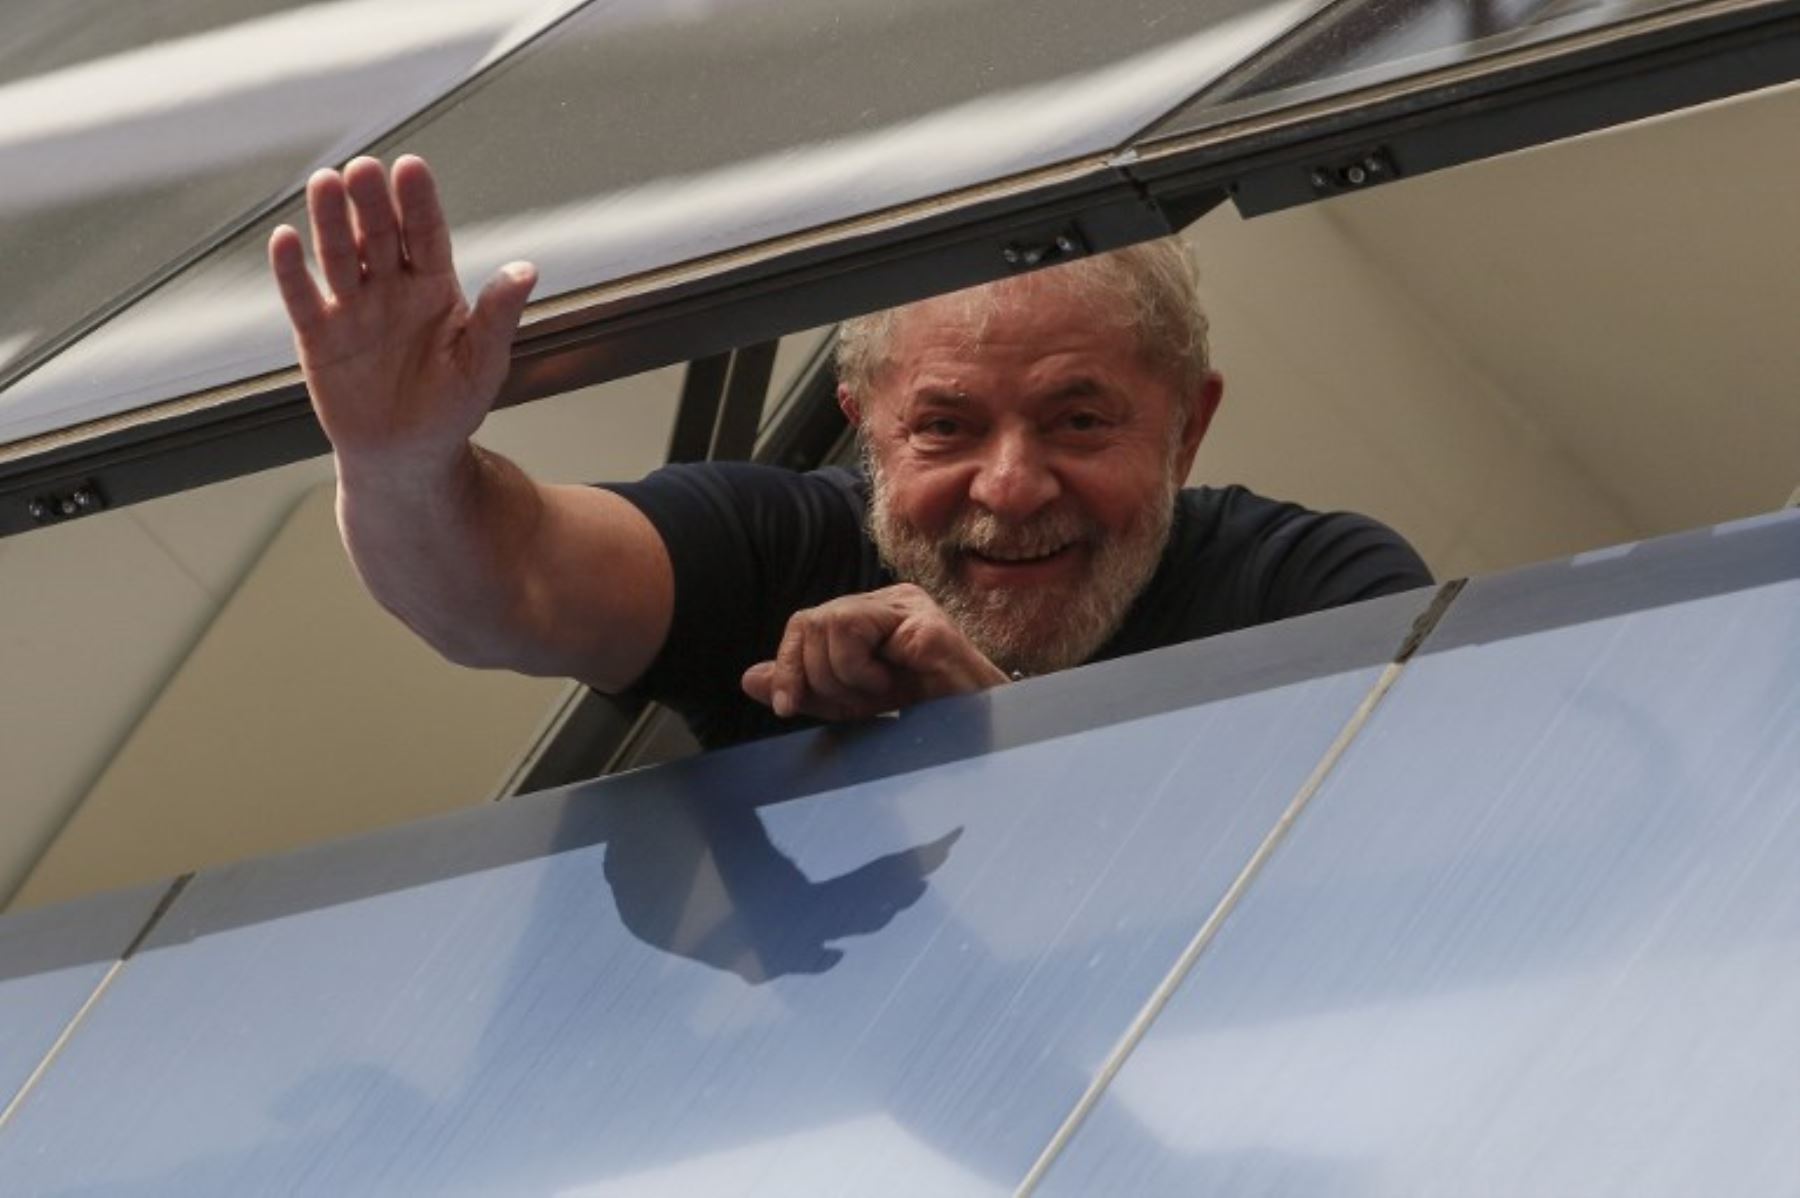 El ex presidente brasileño Luiz Inácio Lula da Silva, icono de la izquierda dijo que cumplirá con la Orden de arresto para comenzar una sentencia de 12 años por corrupción. "Cumpliré con su orden", dijo a una multitud de seguidores.Foto:AFP